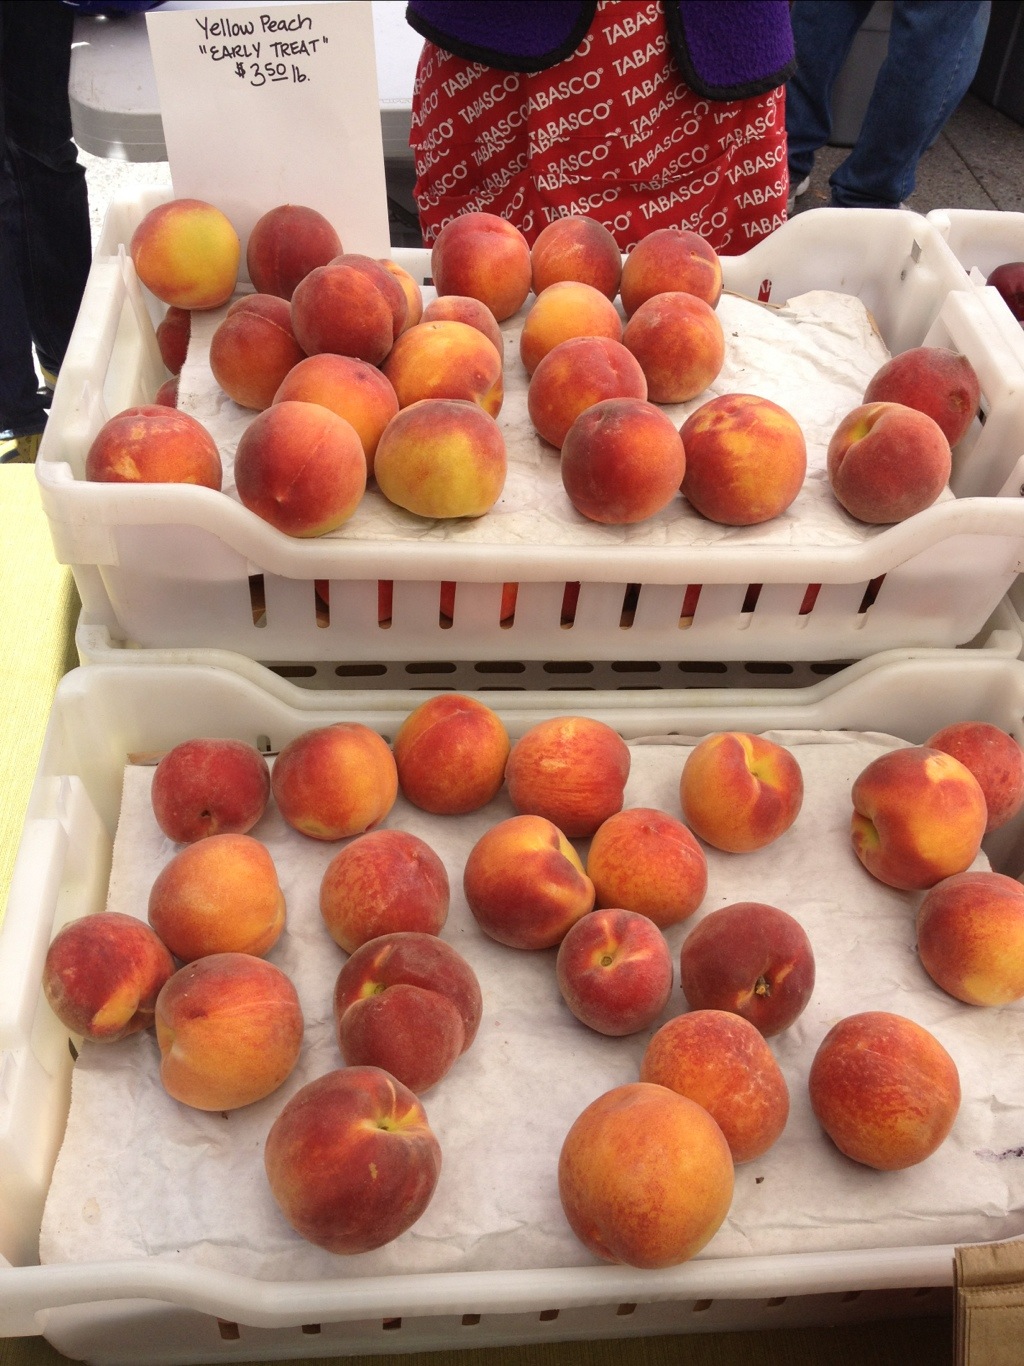 Peach season